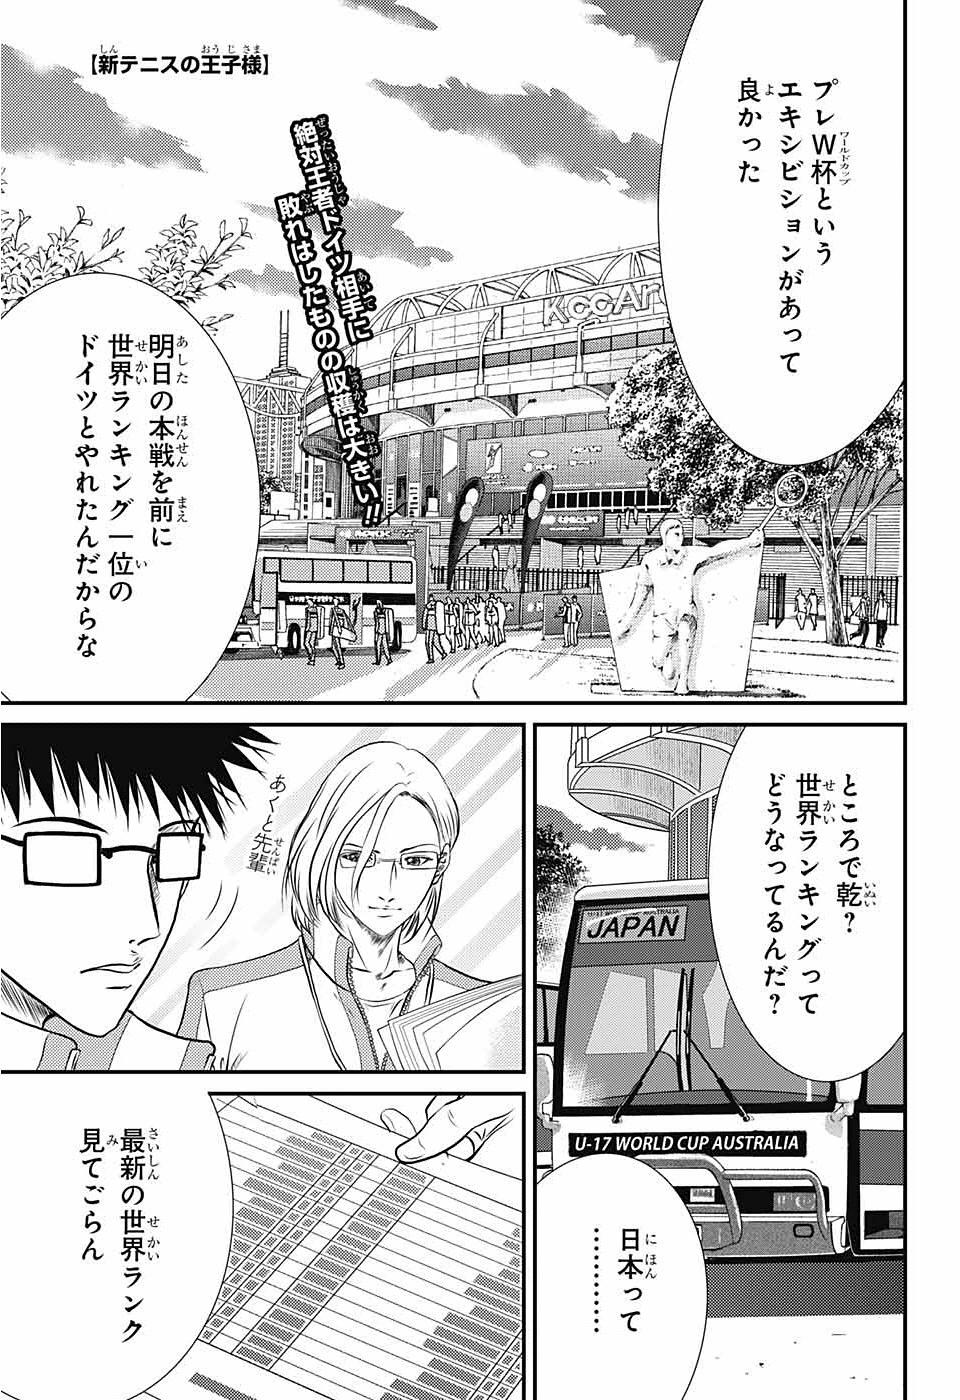 新テニスの王子様 5話 Manga Townまんがタウン まんがまとめ 無料コミック漫画 ネタバレ